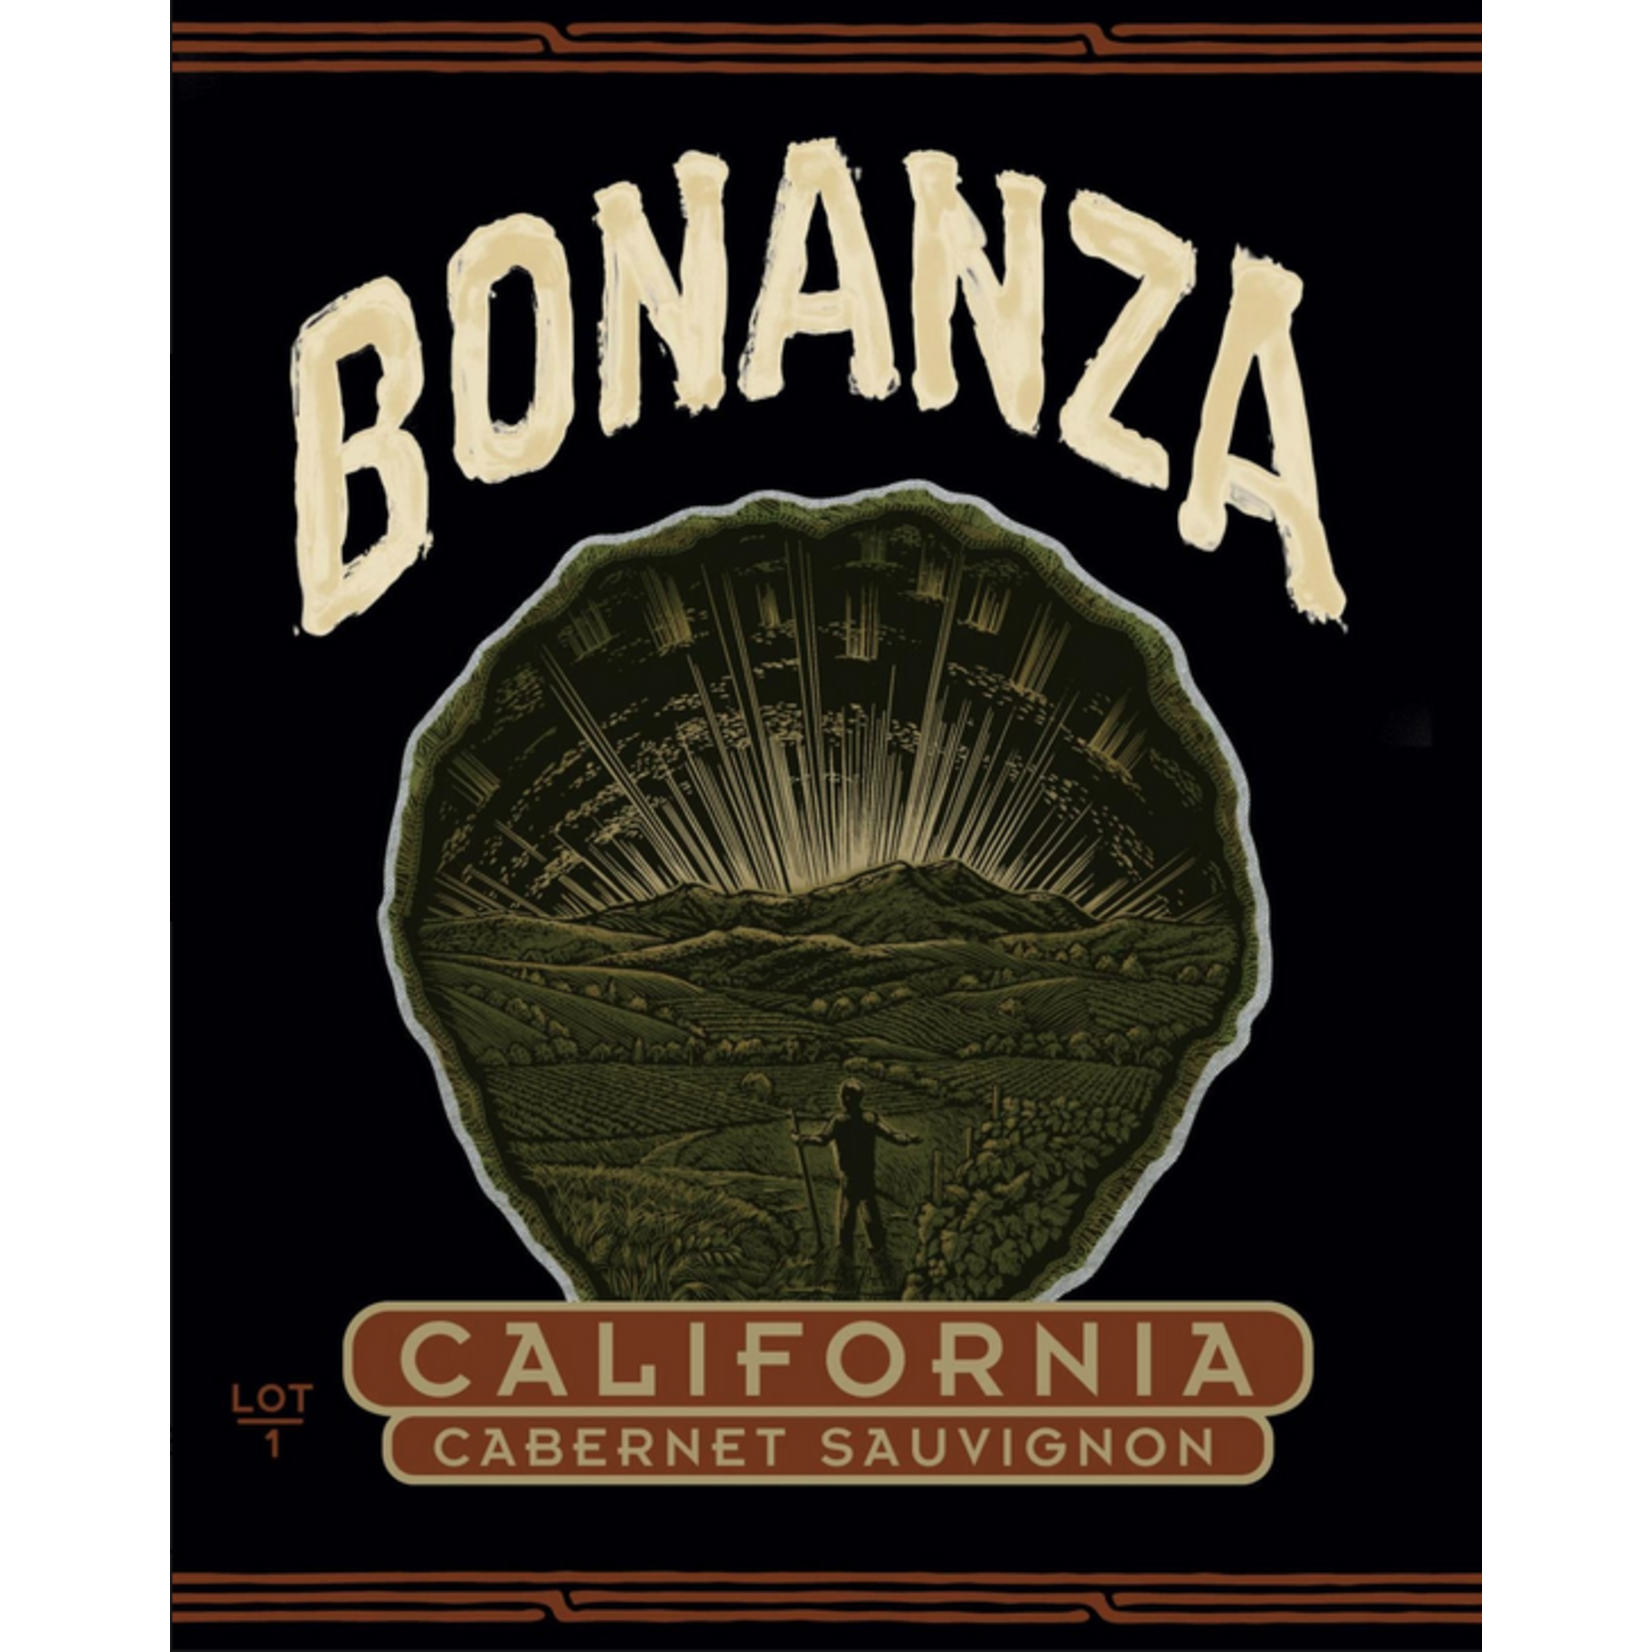 Bonanza Winery Bonanza Lot 6 Cabernet Sauvignon  California